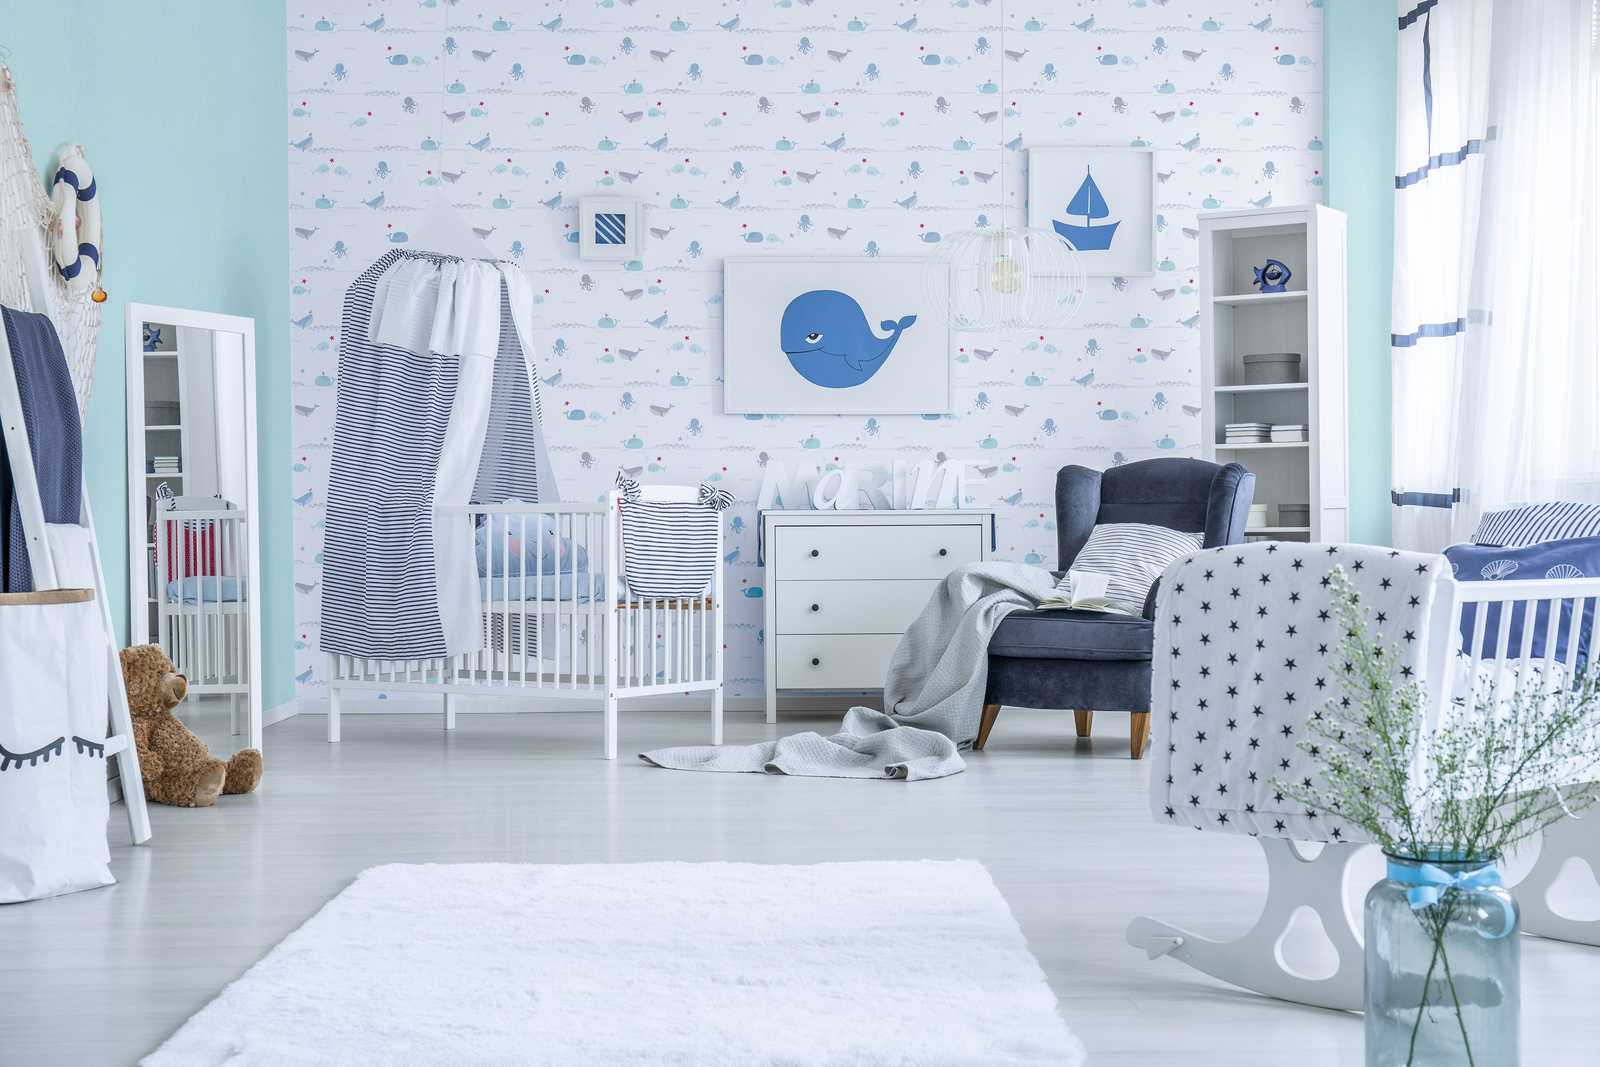             Papel pintado de habitación infantil animales marinos - azul, gris, blanco
        